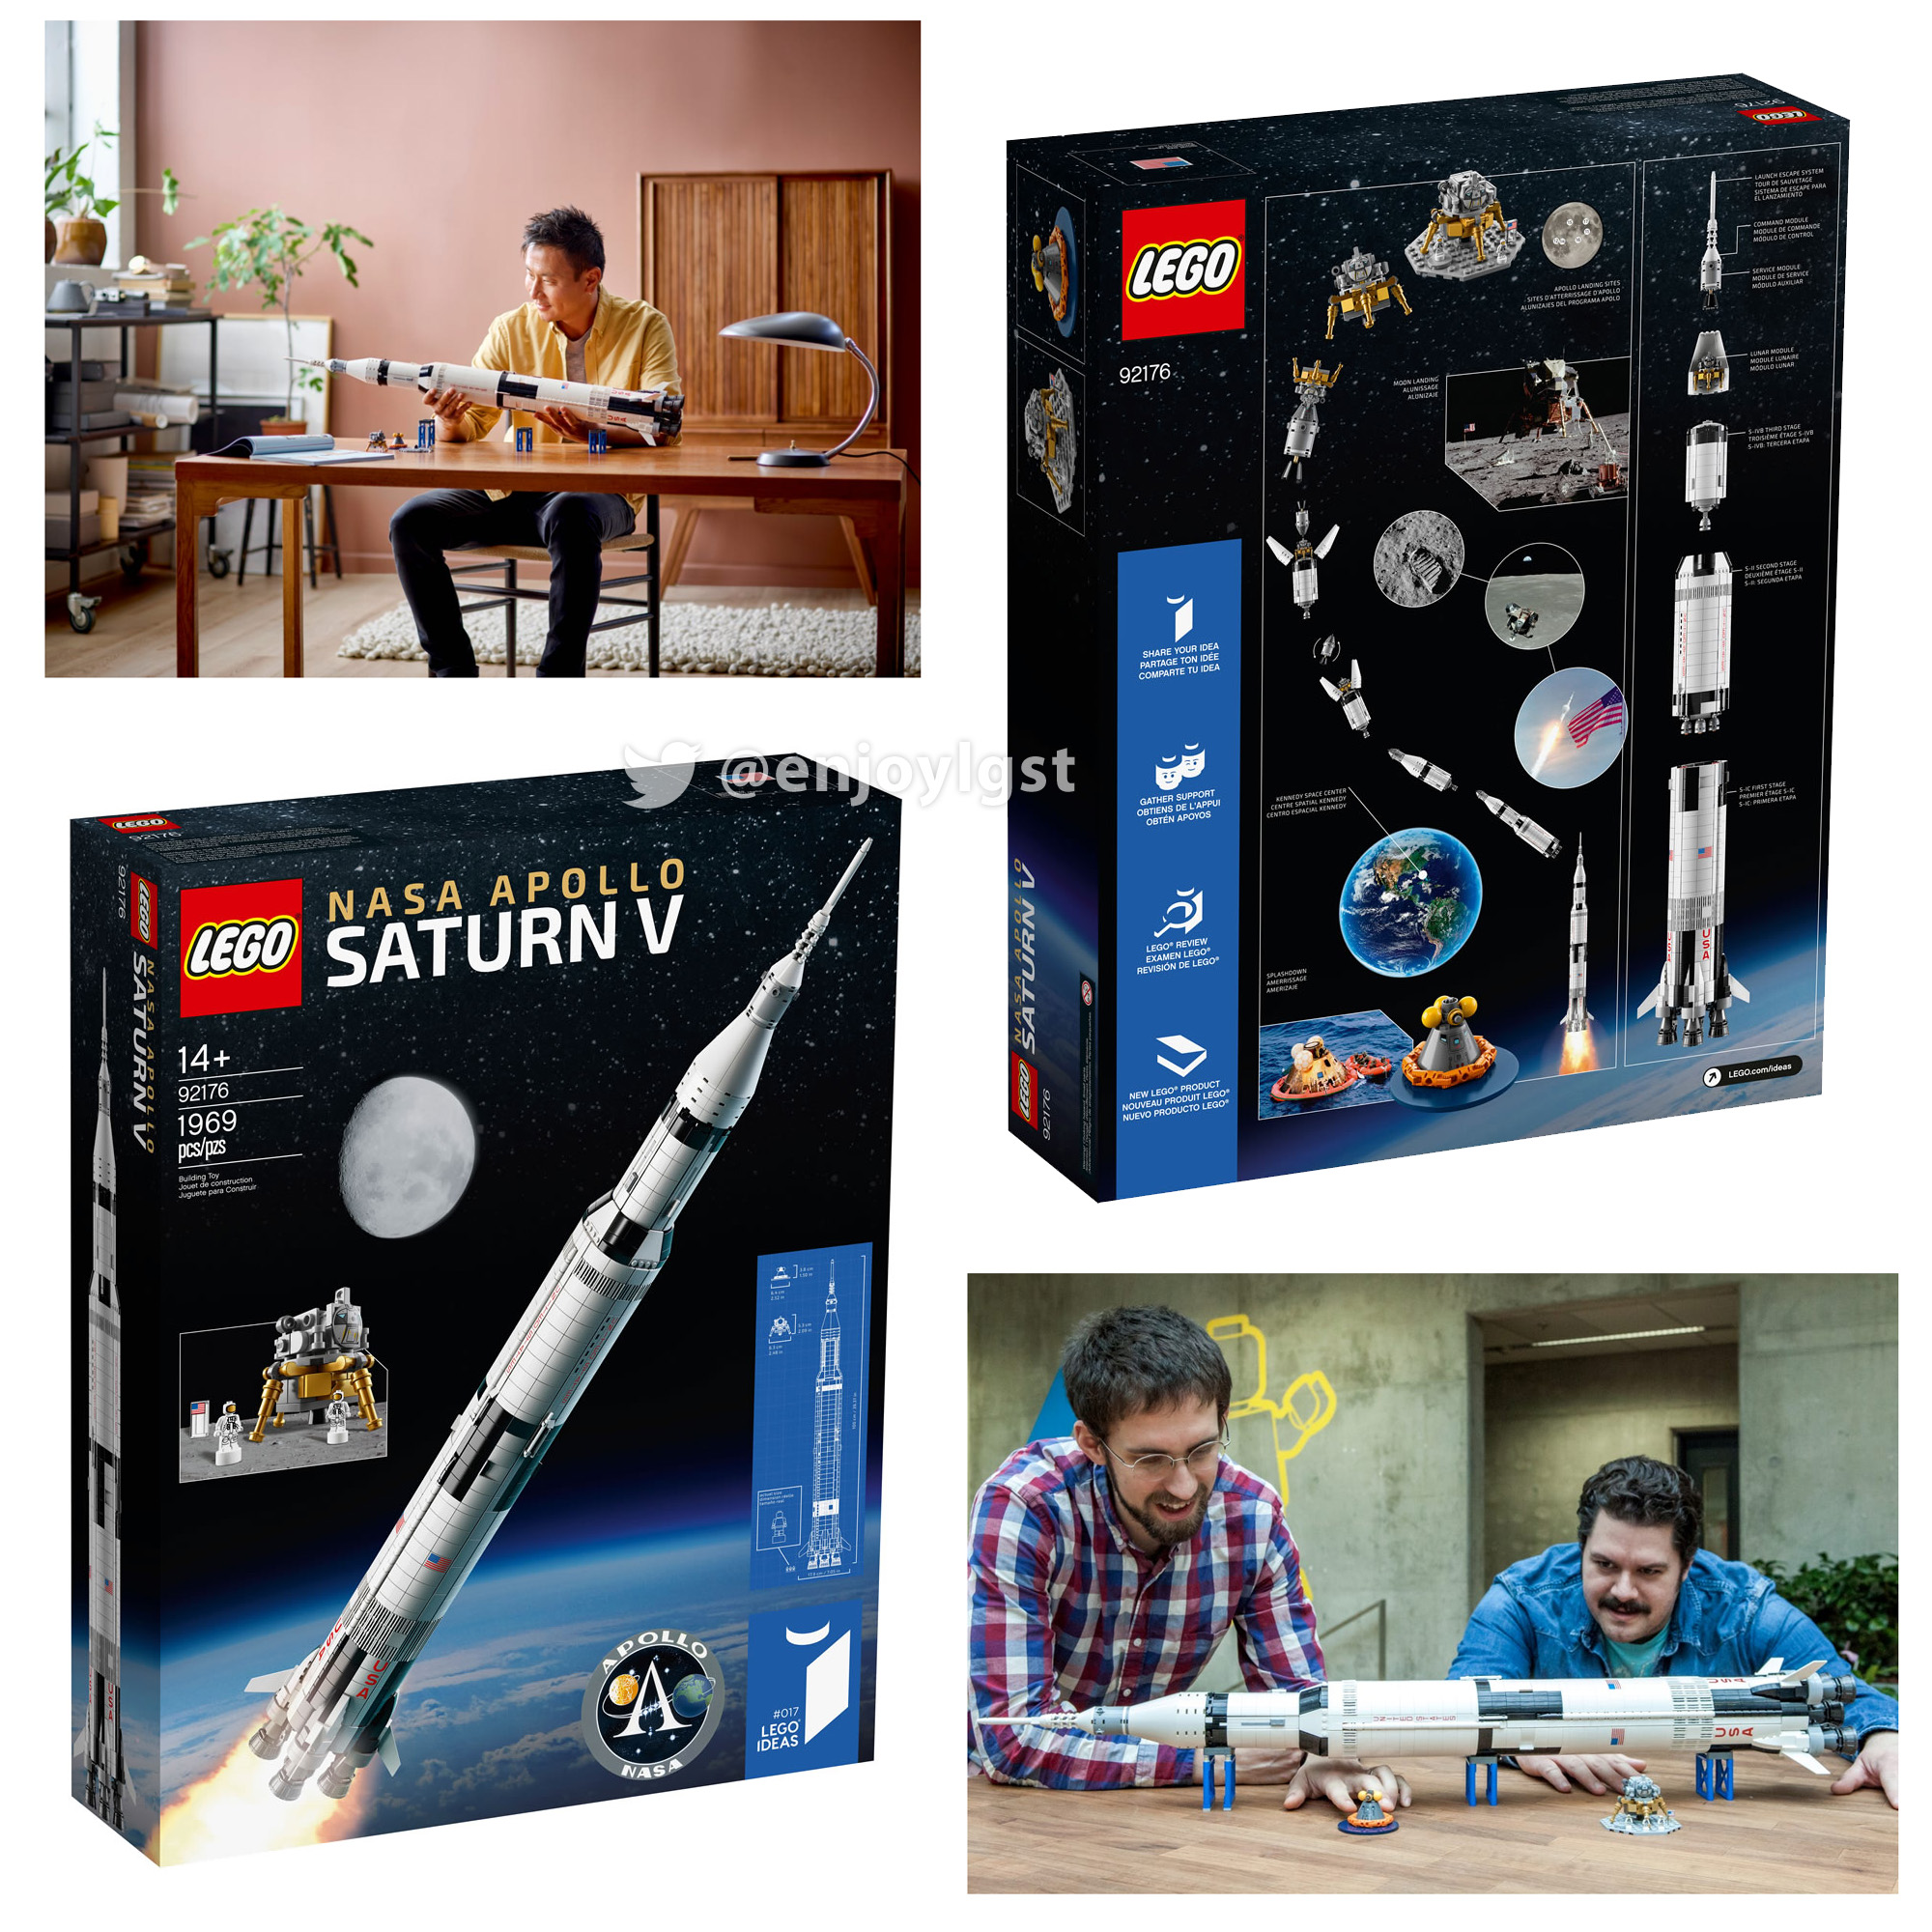 2020年レゴ(R)新製品：92176 NASA アポロ計画 サターンV：レゴ(R)LEGO(R) アイデア：製品・価格情報